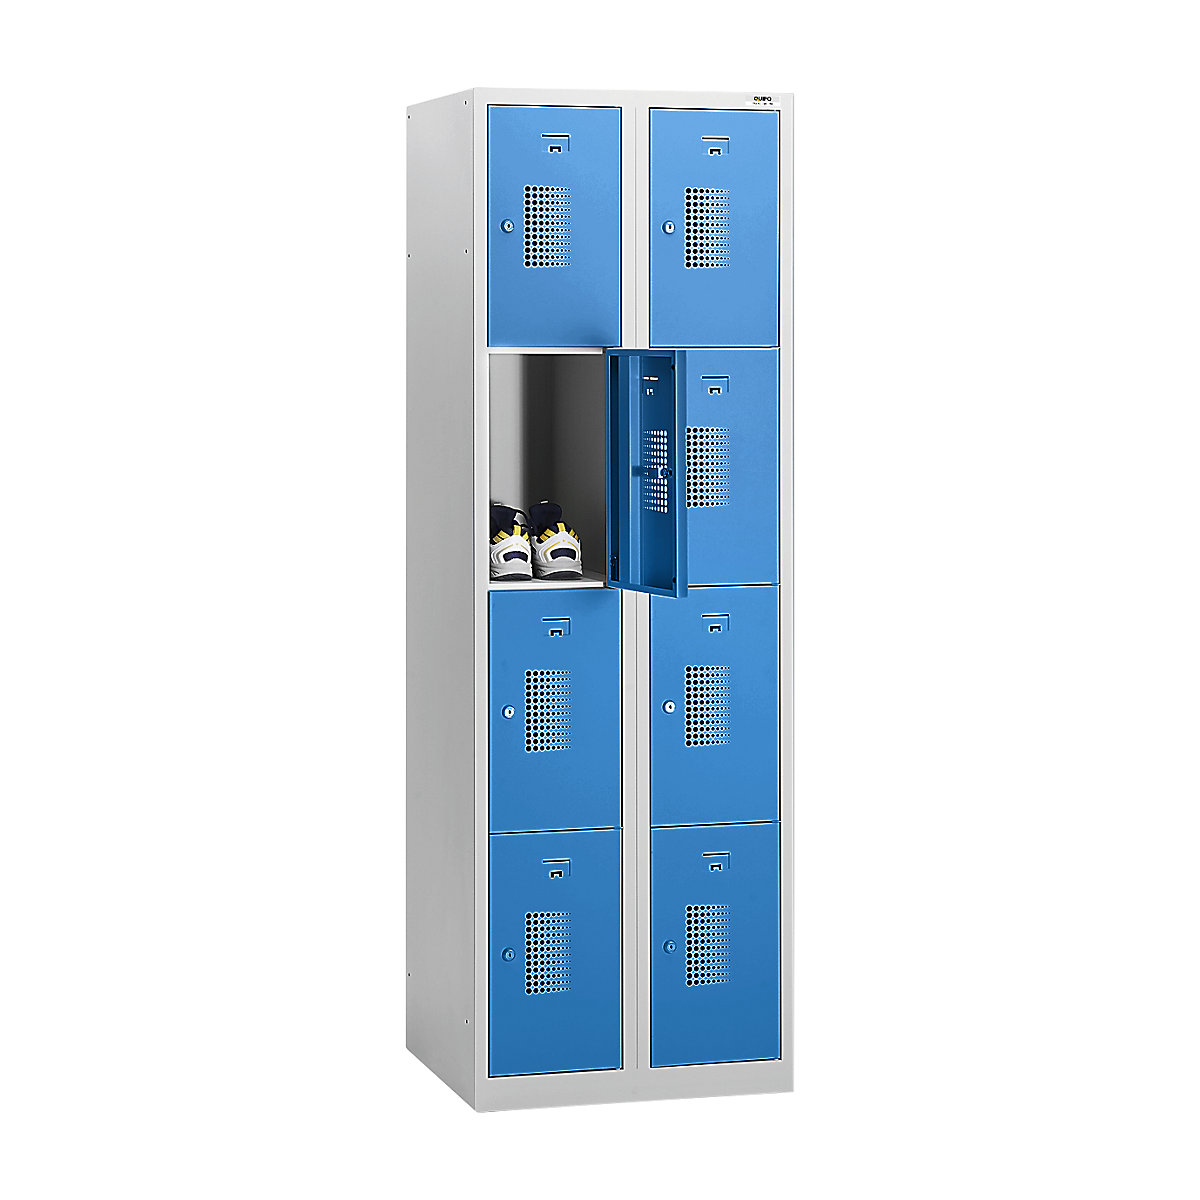 AMSTERDAM zárható rekeszes szekrény – eurokraft basic, 2 fülke, szélesség 800 mm, 8 rekesz, hengerzár, világosszürke váz, világoskék ajtók